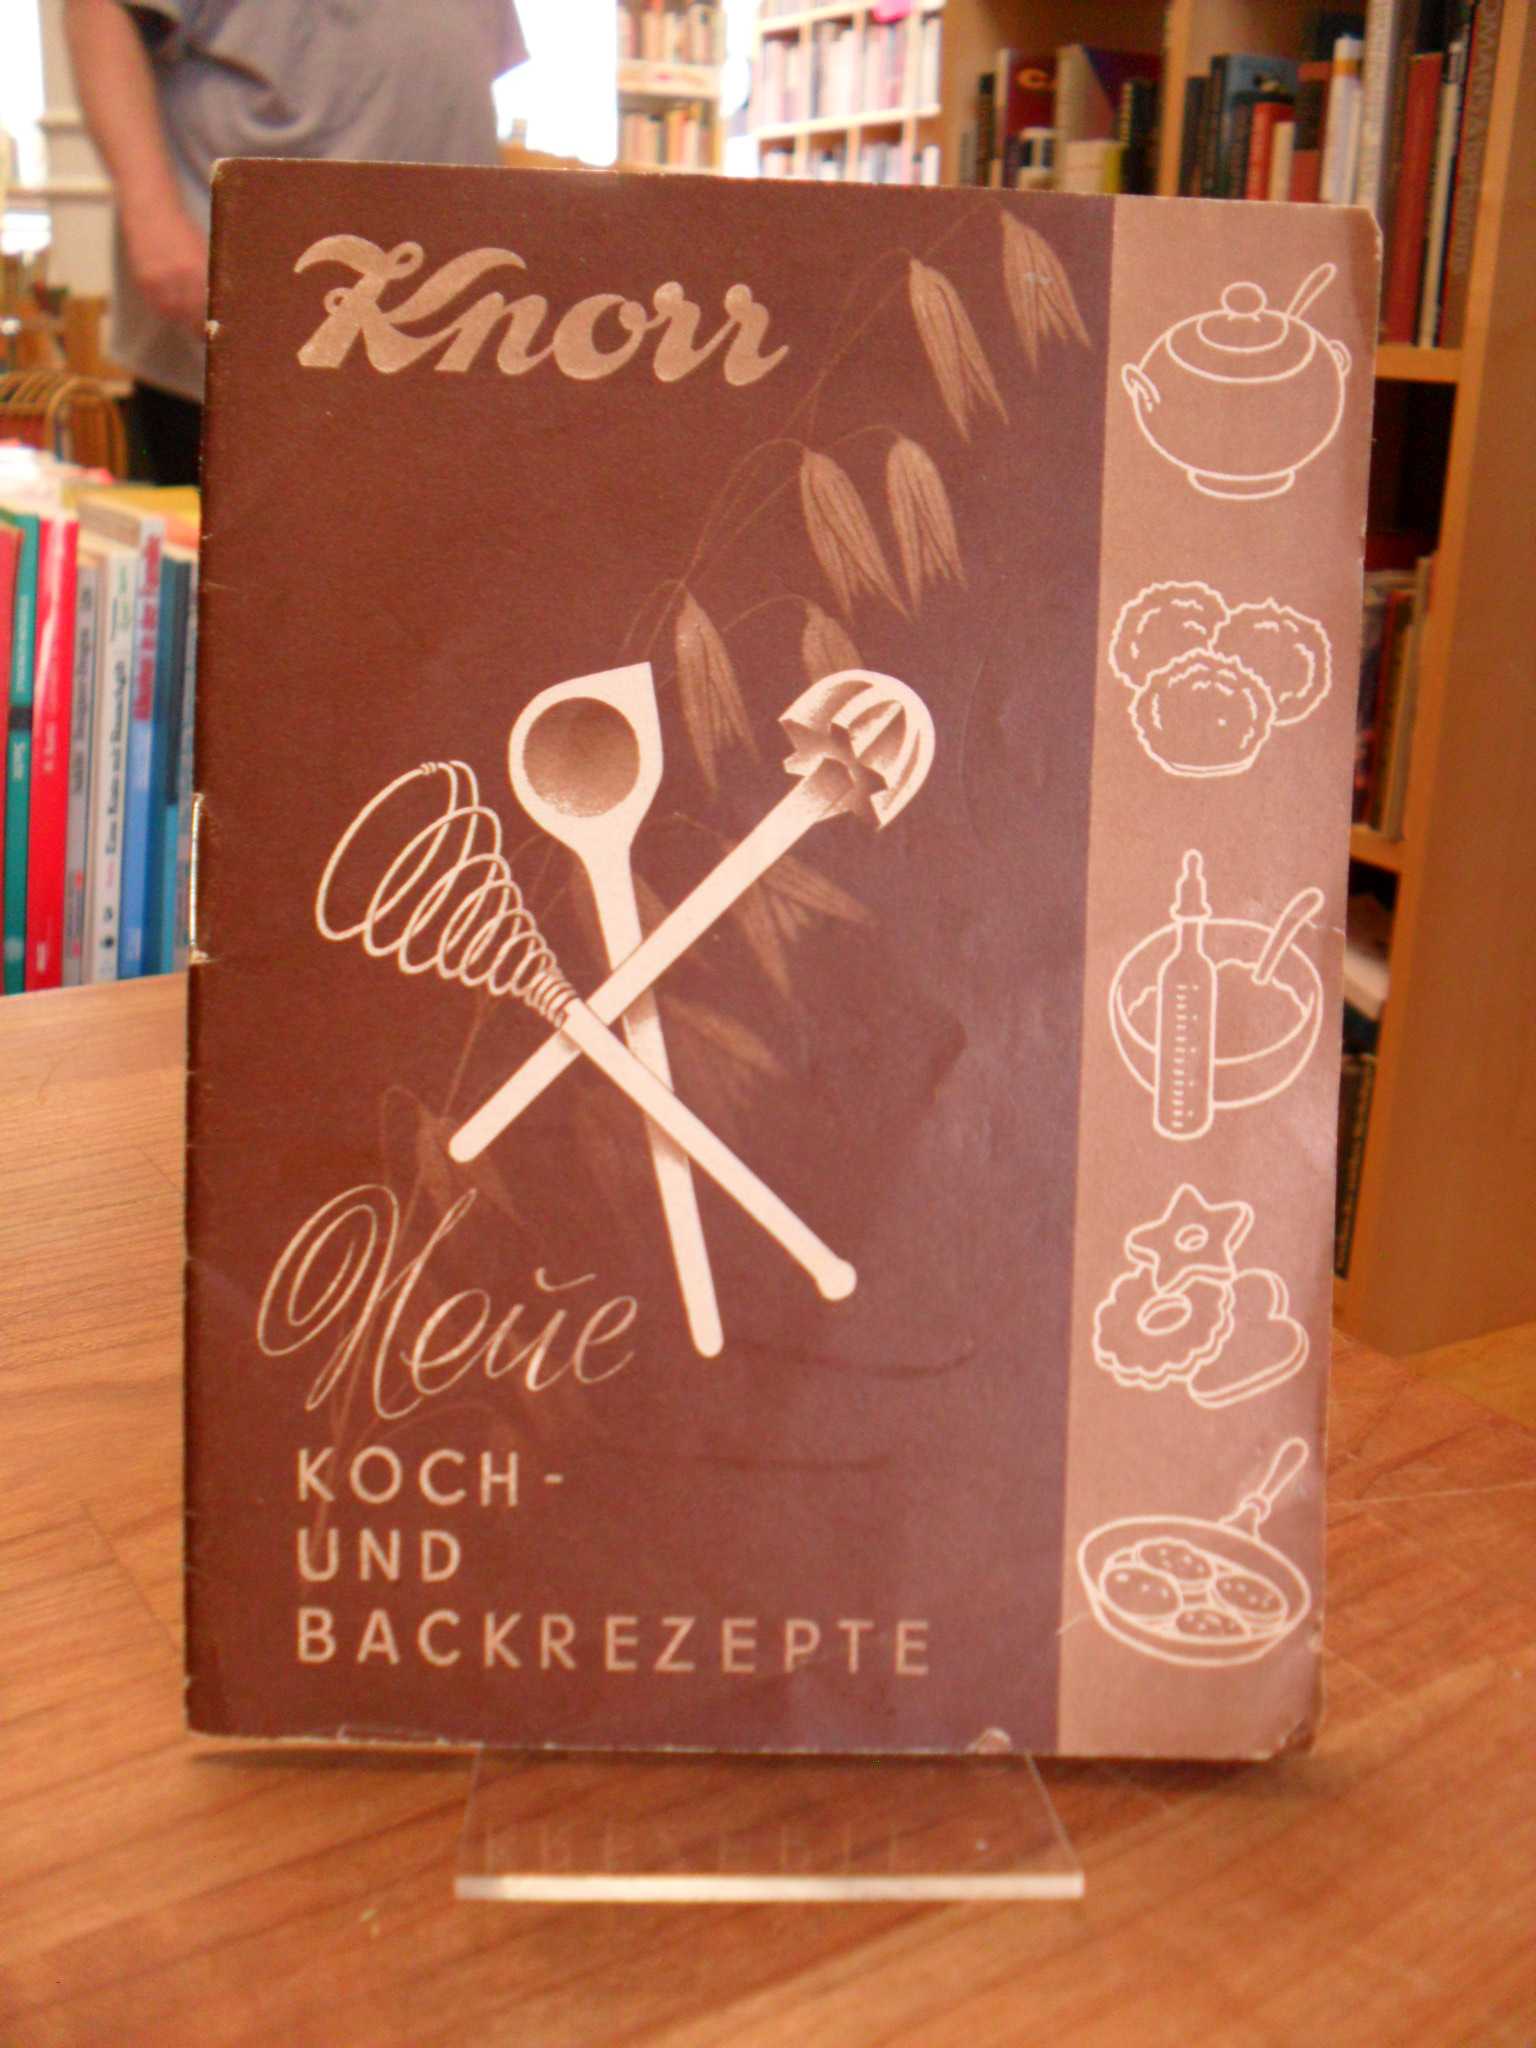 Knorr Werbebroschur, Knorr – Neue Koch und Backrezepte,